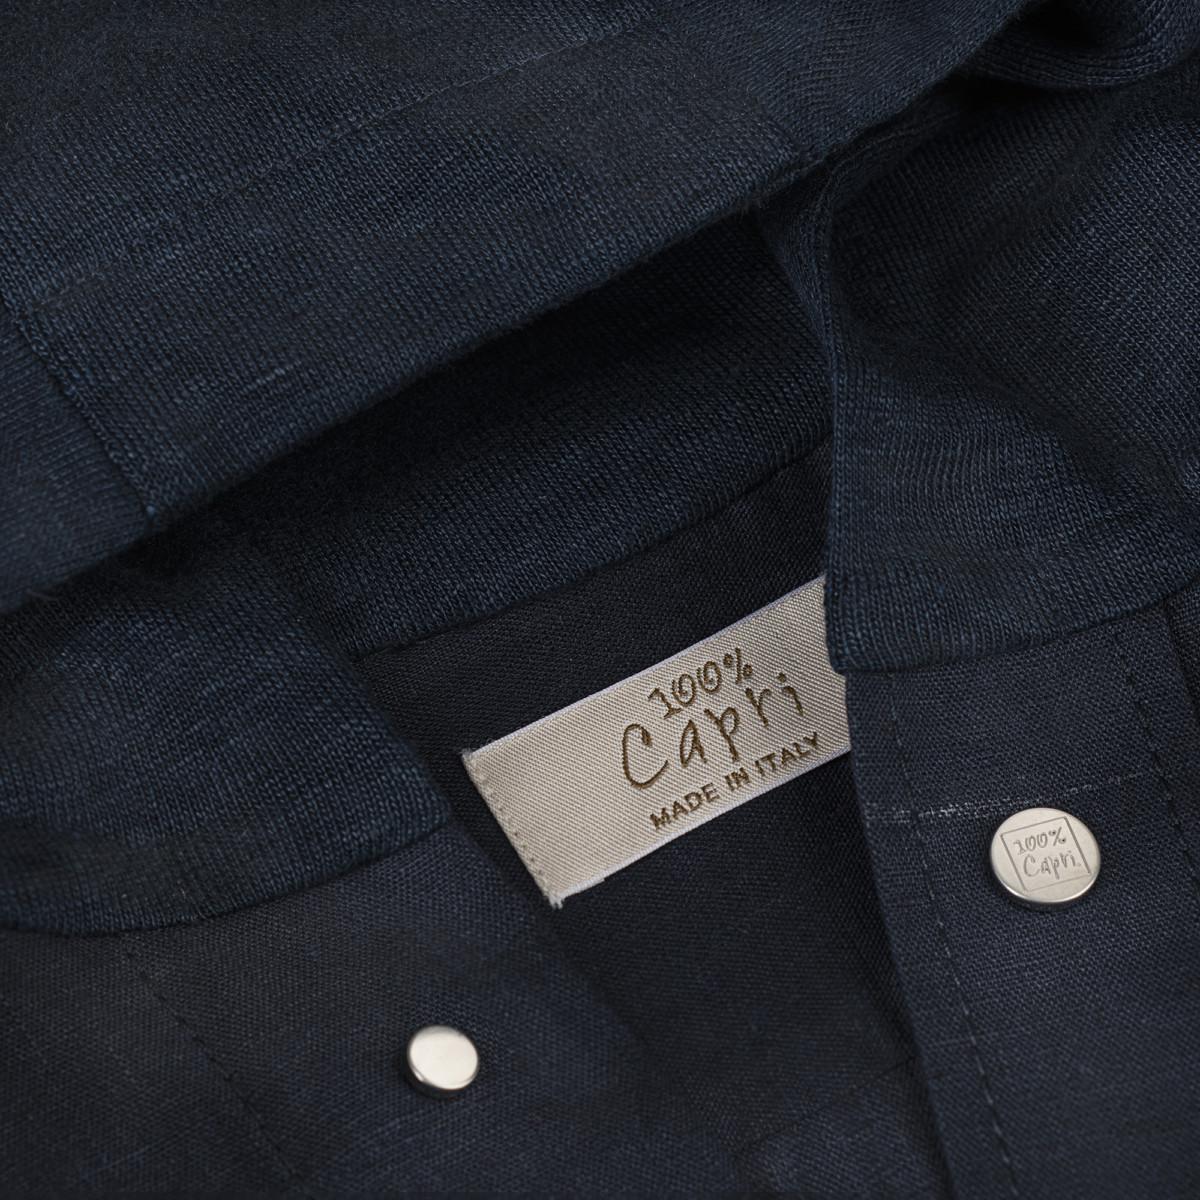 Camicia Cappuccio blue details 100% Capri